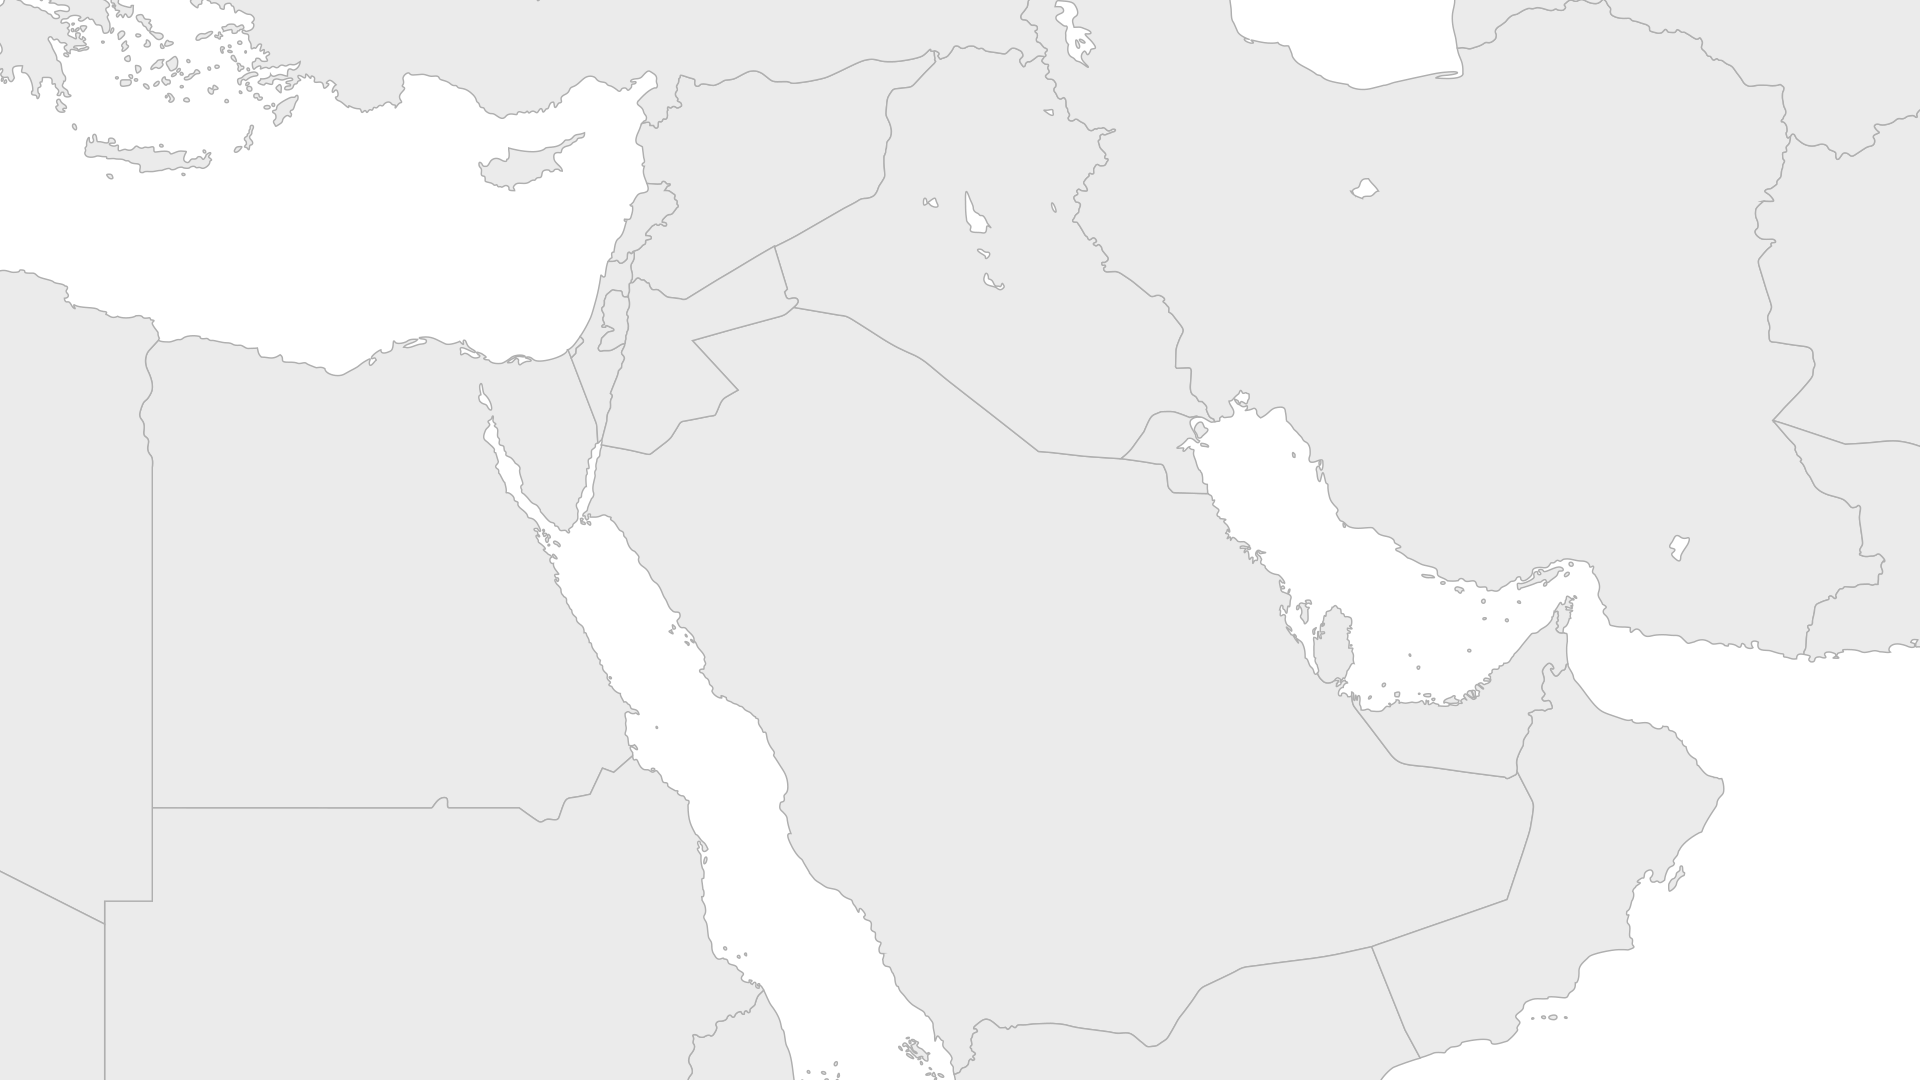 Egypt, Jordan & Israel Map